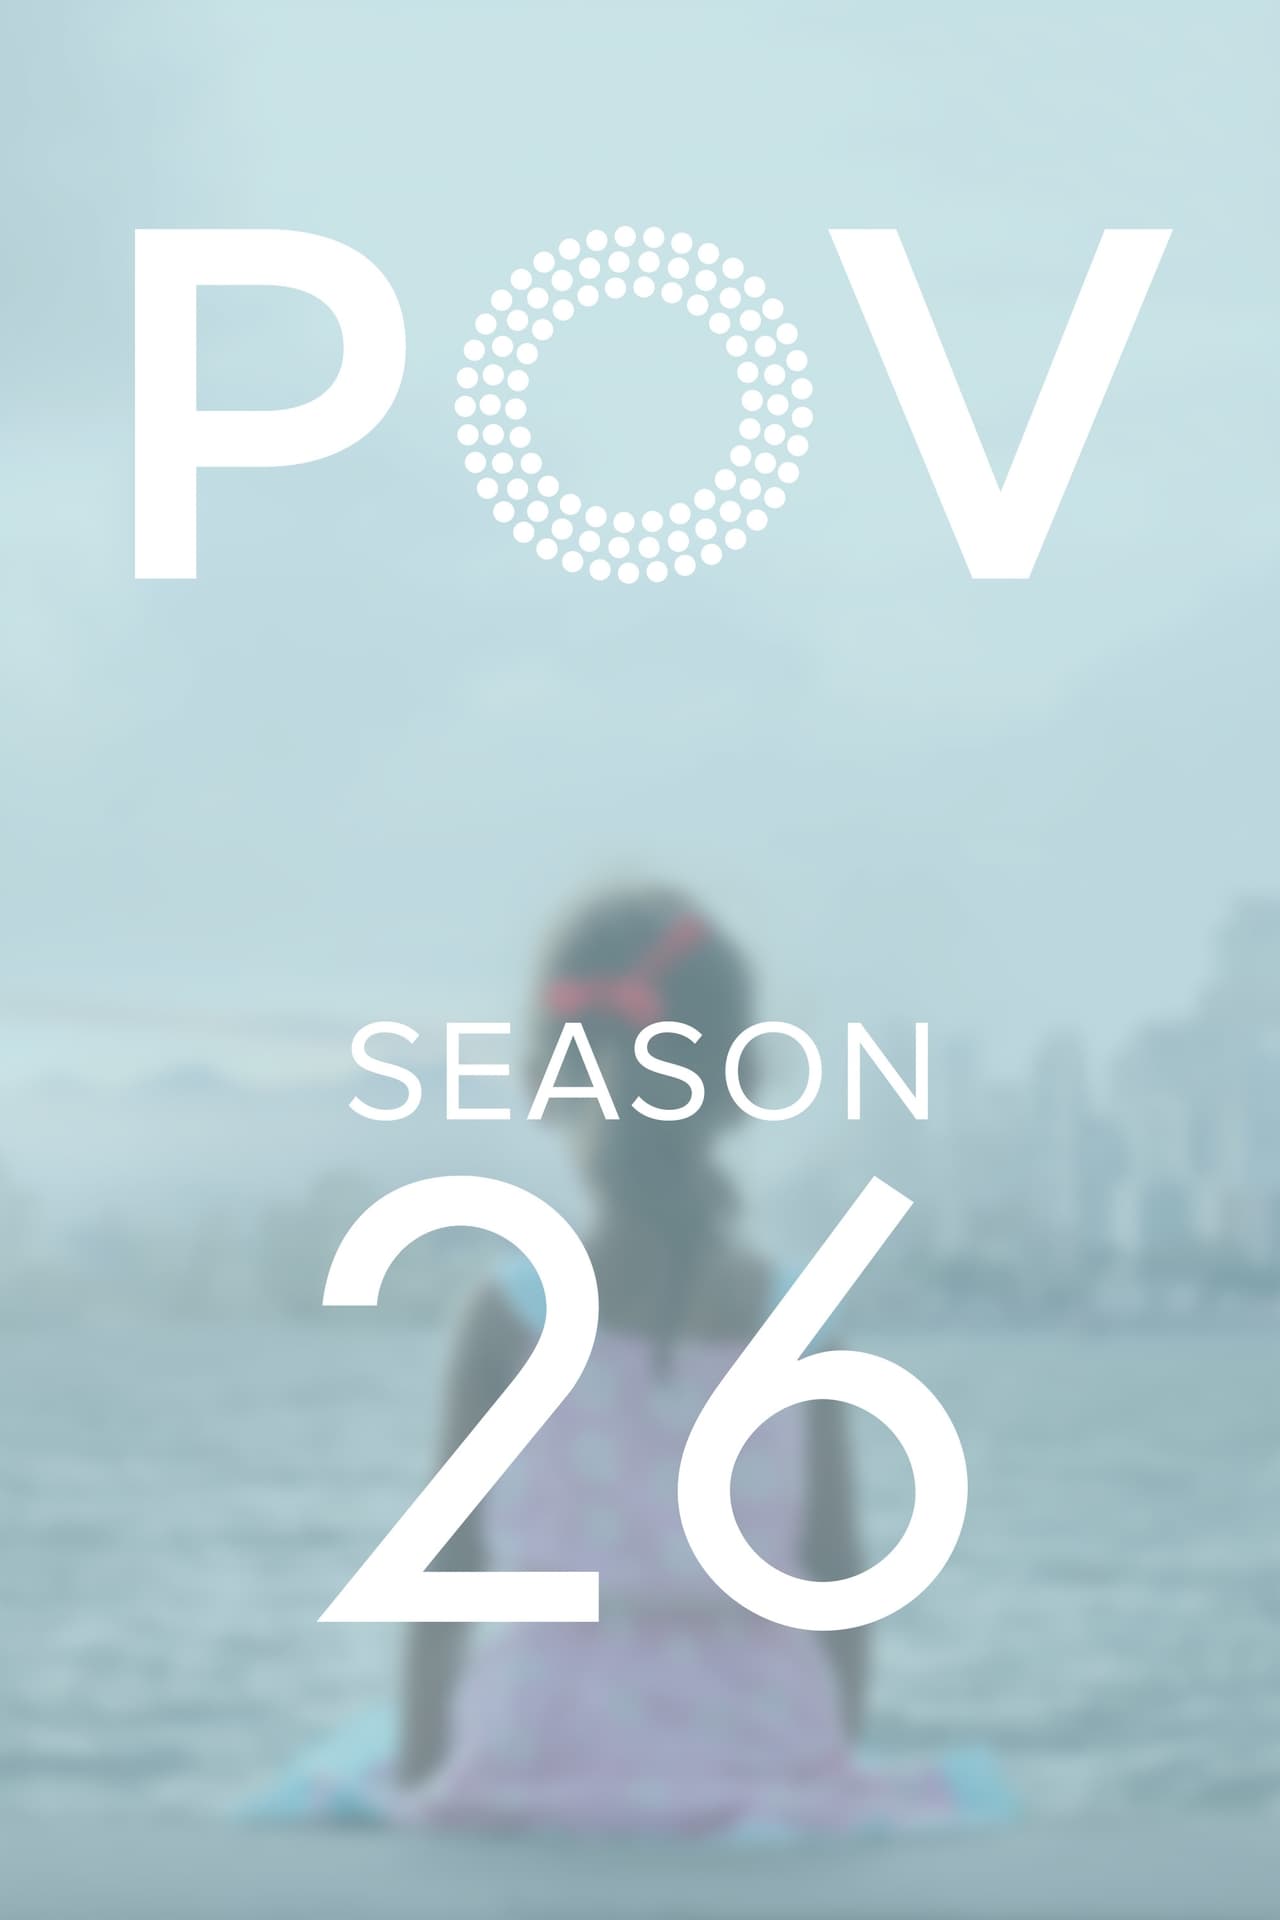 POV Season 26